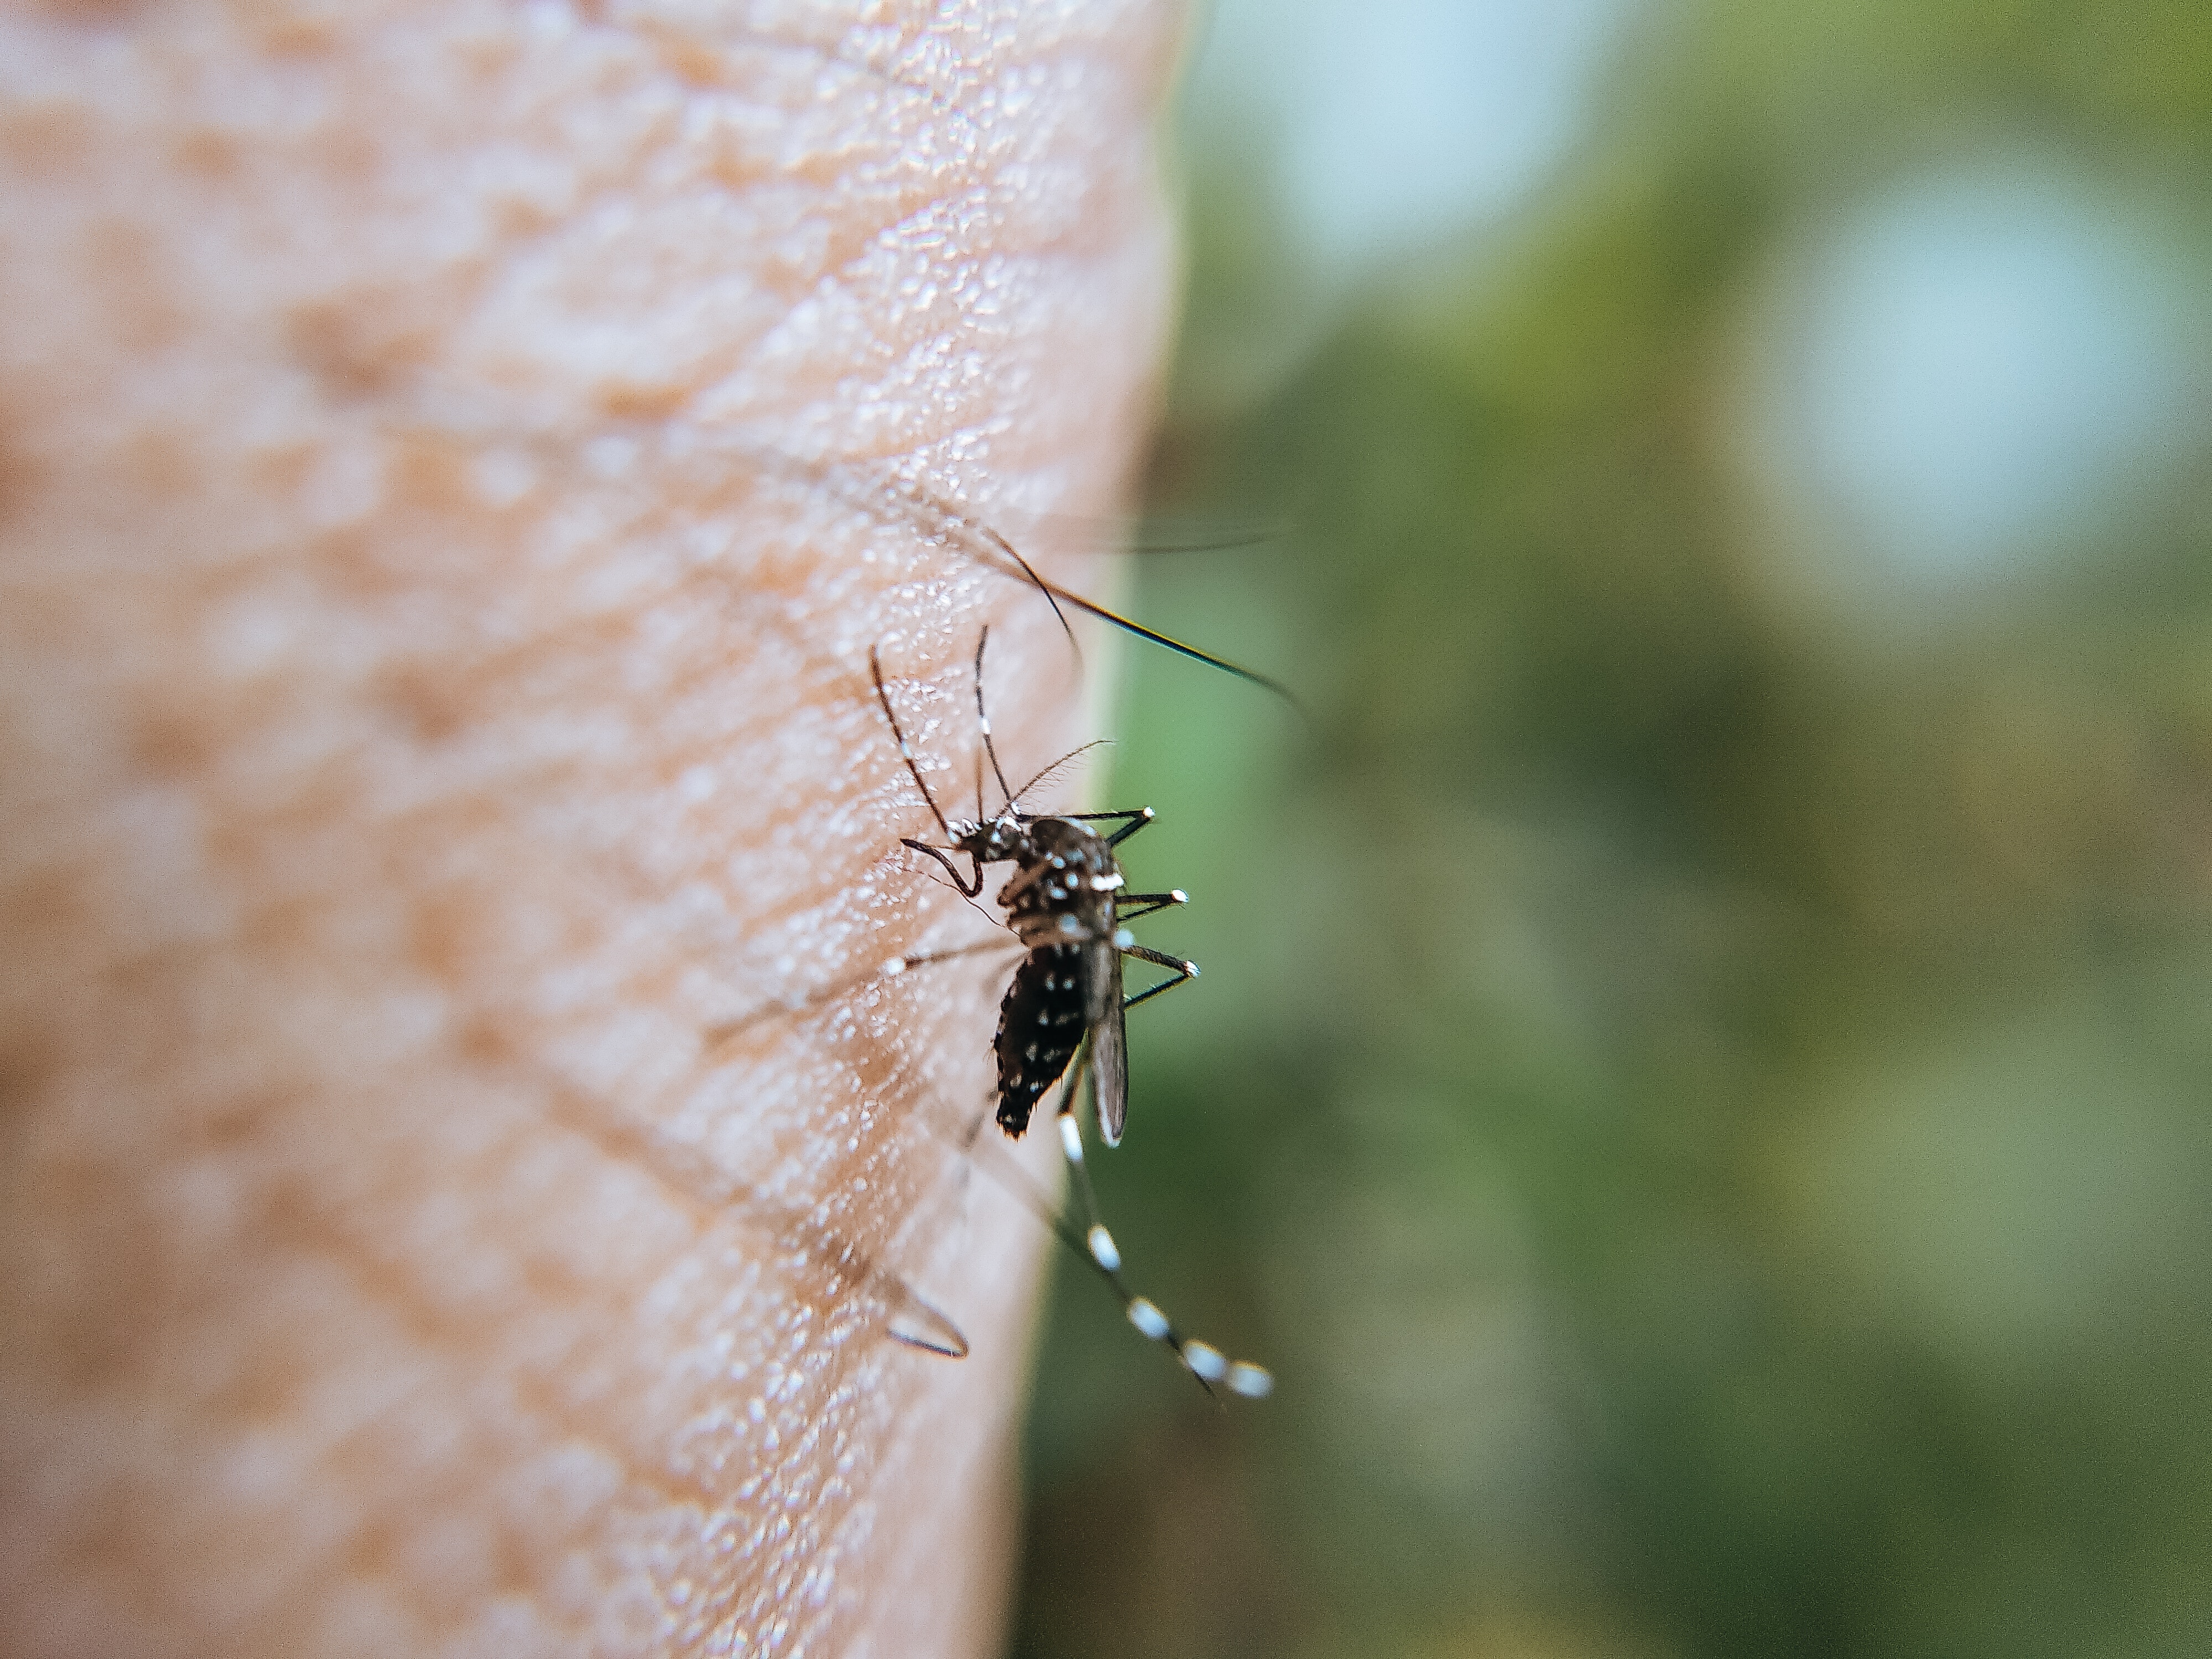 10 choses à savoir sur les moustiques - SOLUTY